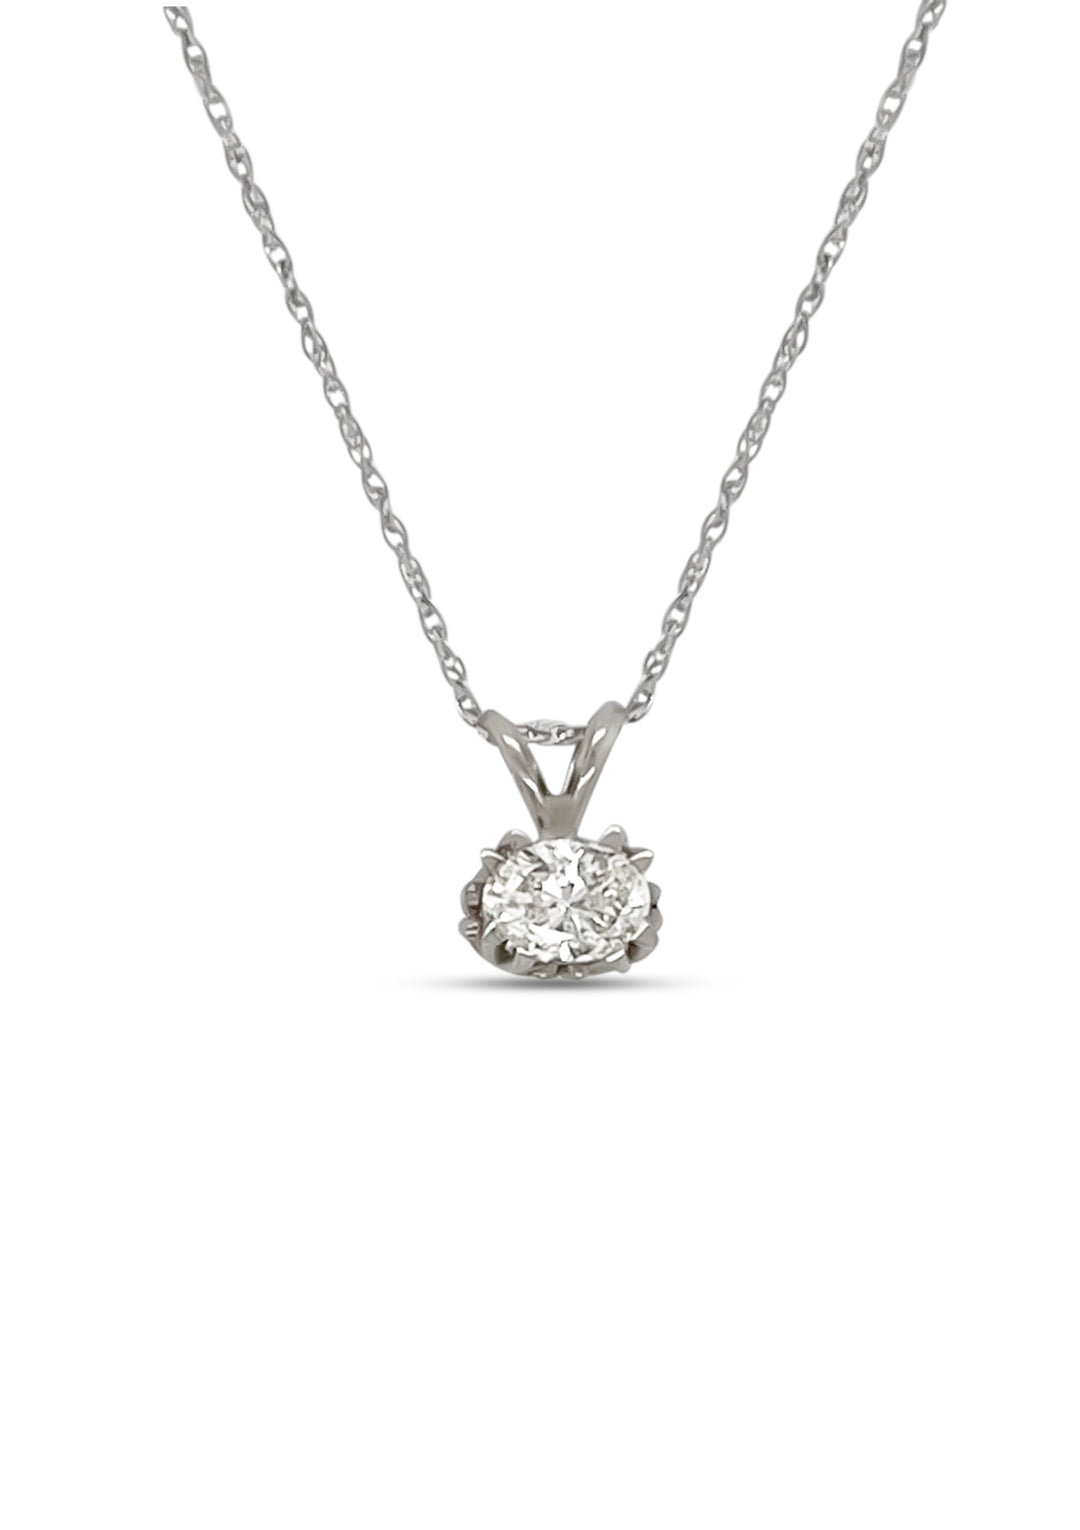 14K White Gold 0.50 Carat Oval Diamond Necklace